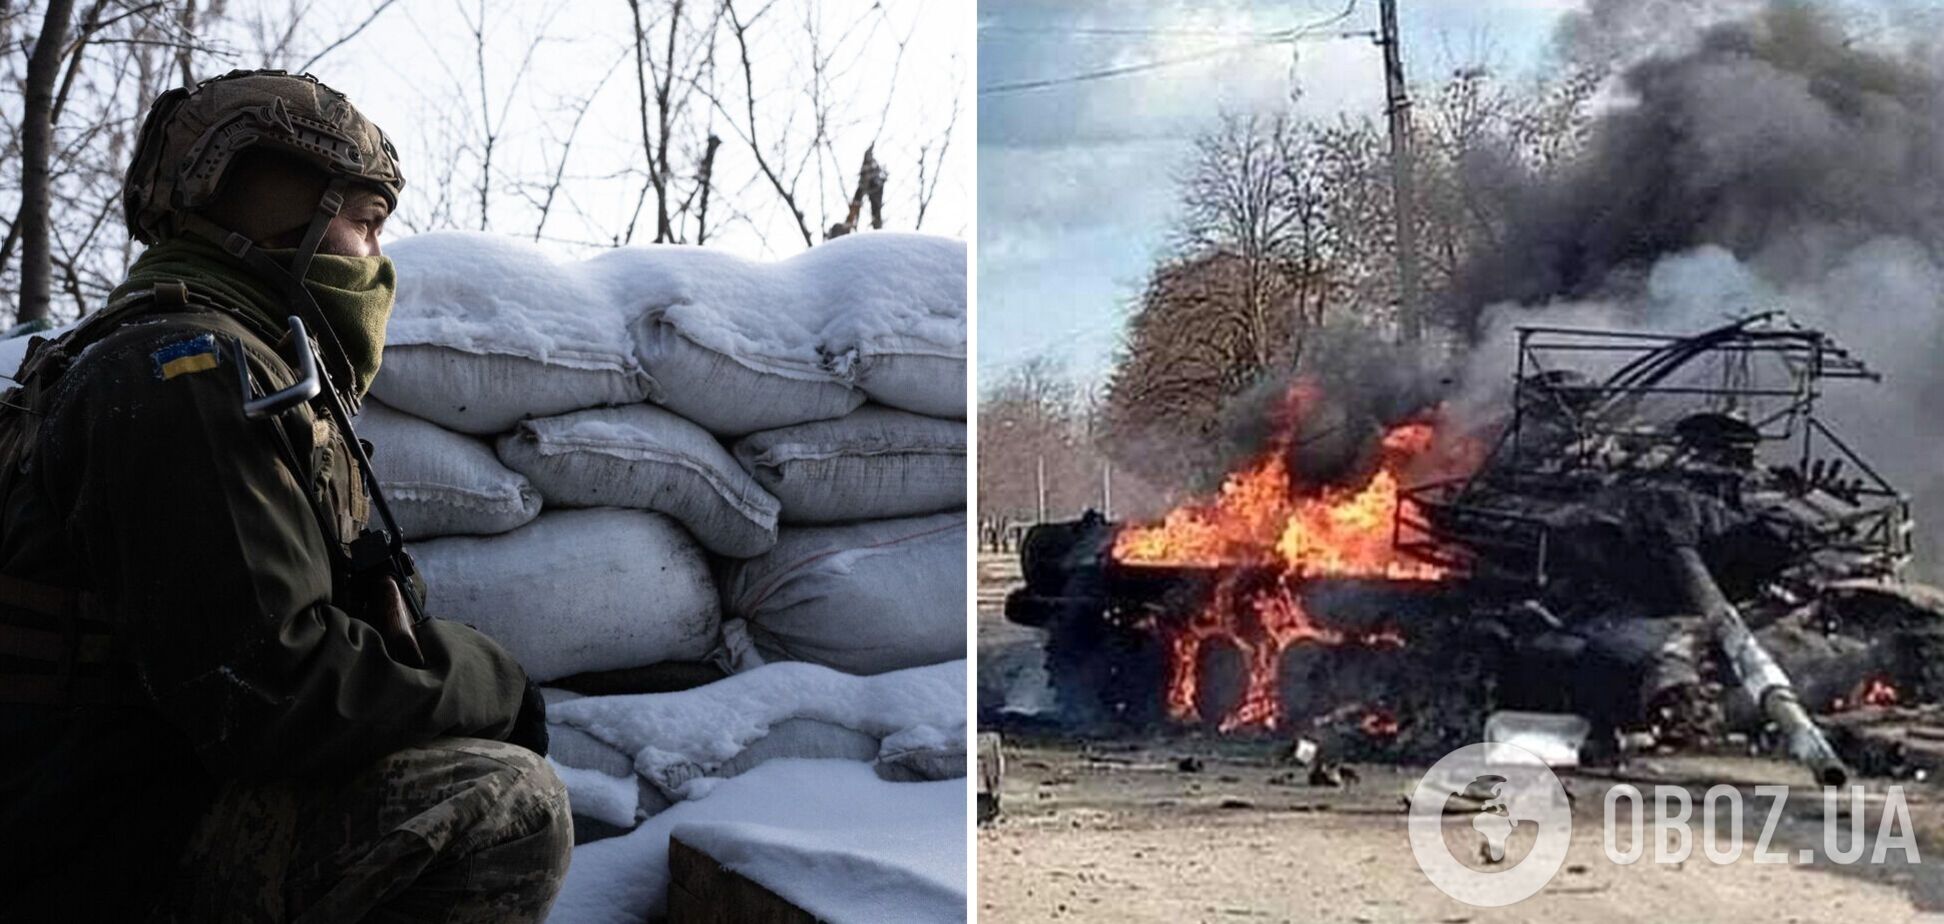 Розбомблені дороги та тіла окупантів на землі: у Генштабі показали наслідки боїв на Луганщині. Відео